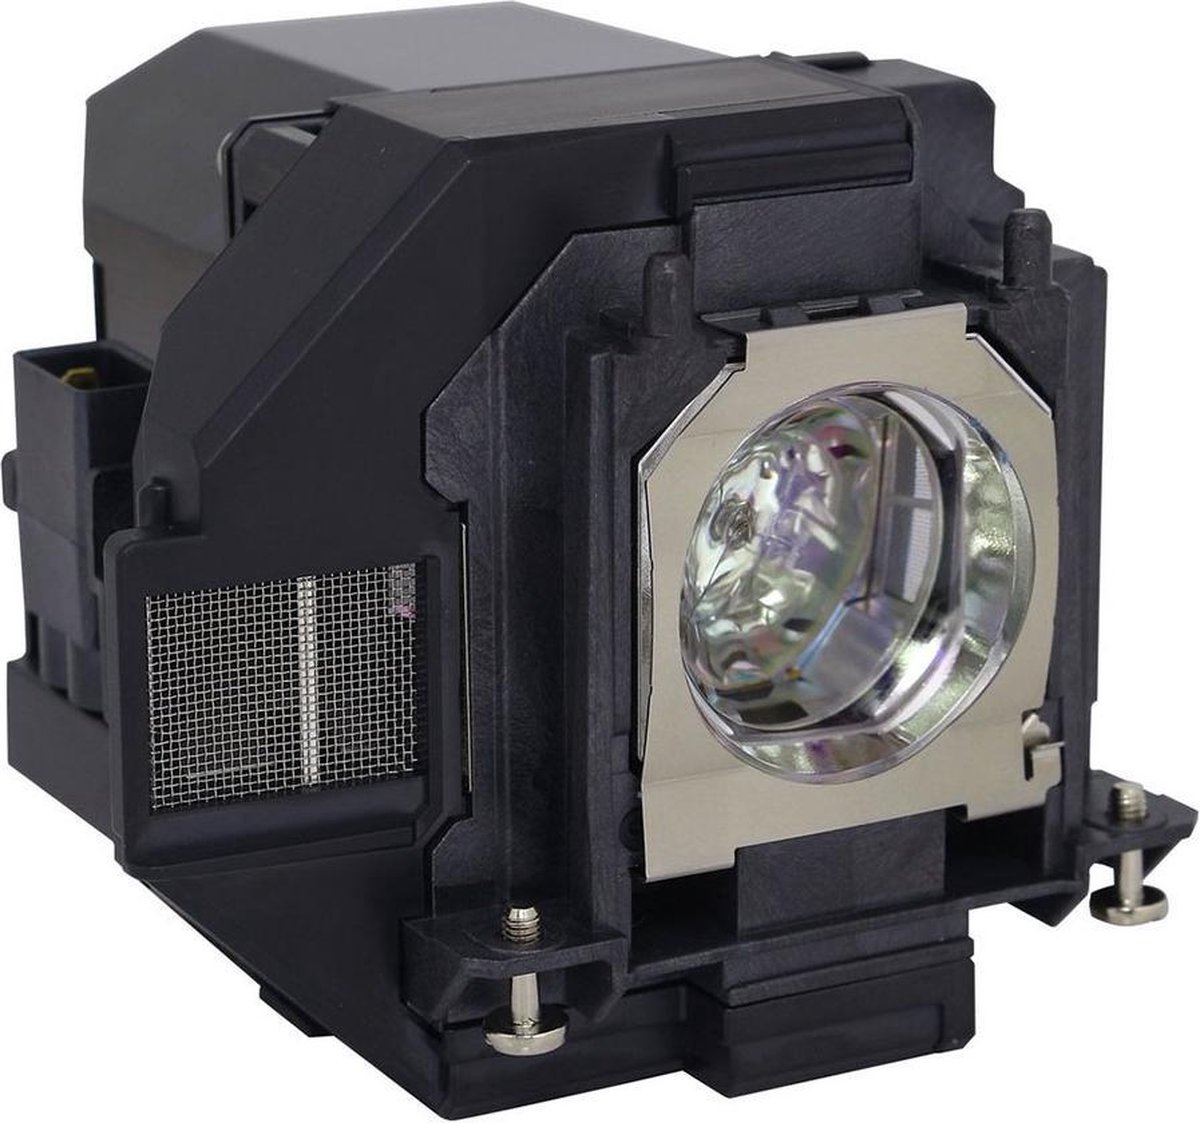 Beamerlamp geschikt voor de EPSON EB-X450 beamer, lamp code LP96 / V13H010L96. Bevat originele UHP lamp, prestaties gelijk aan origineel.